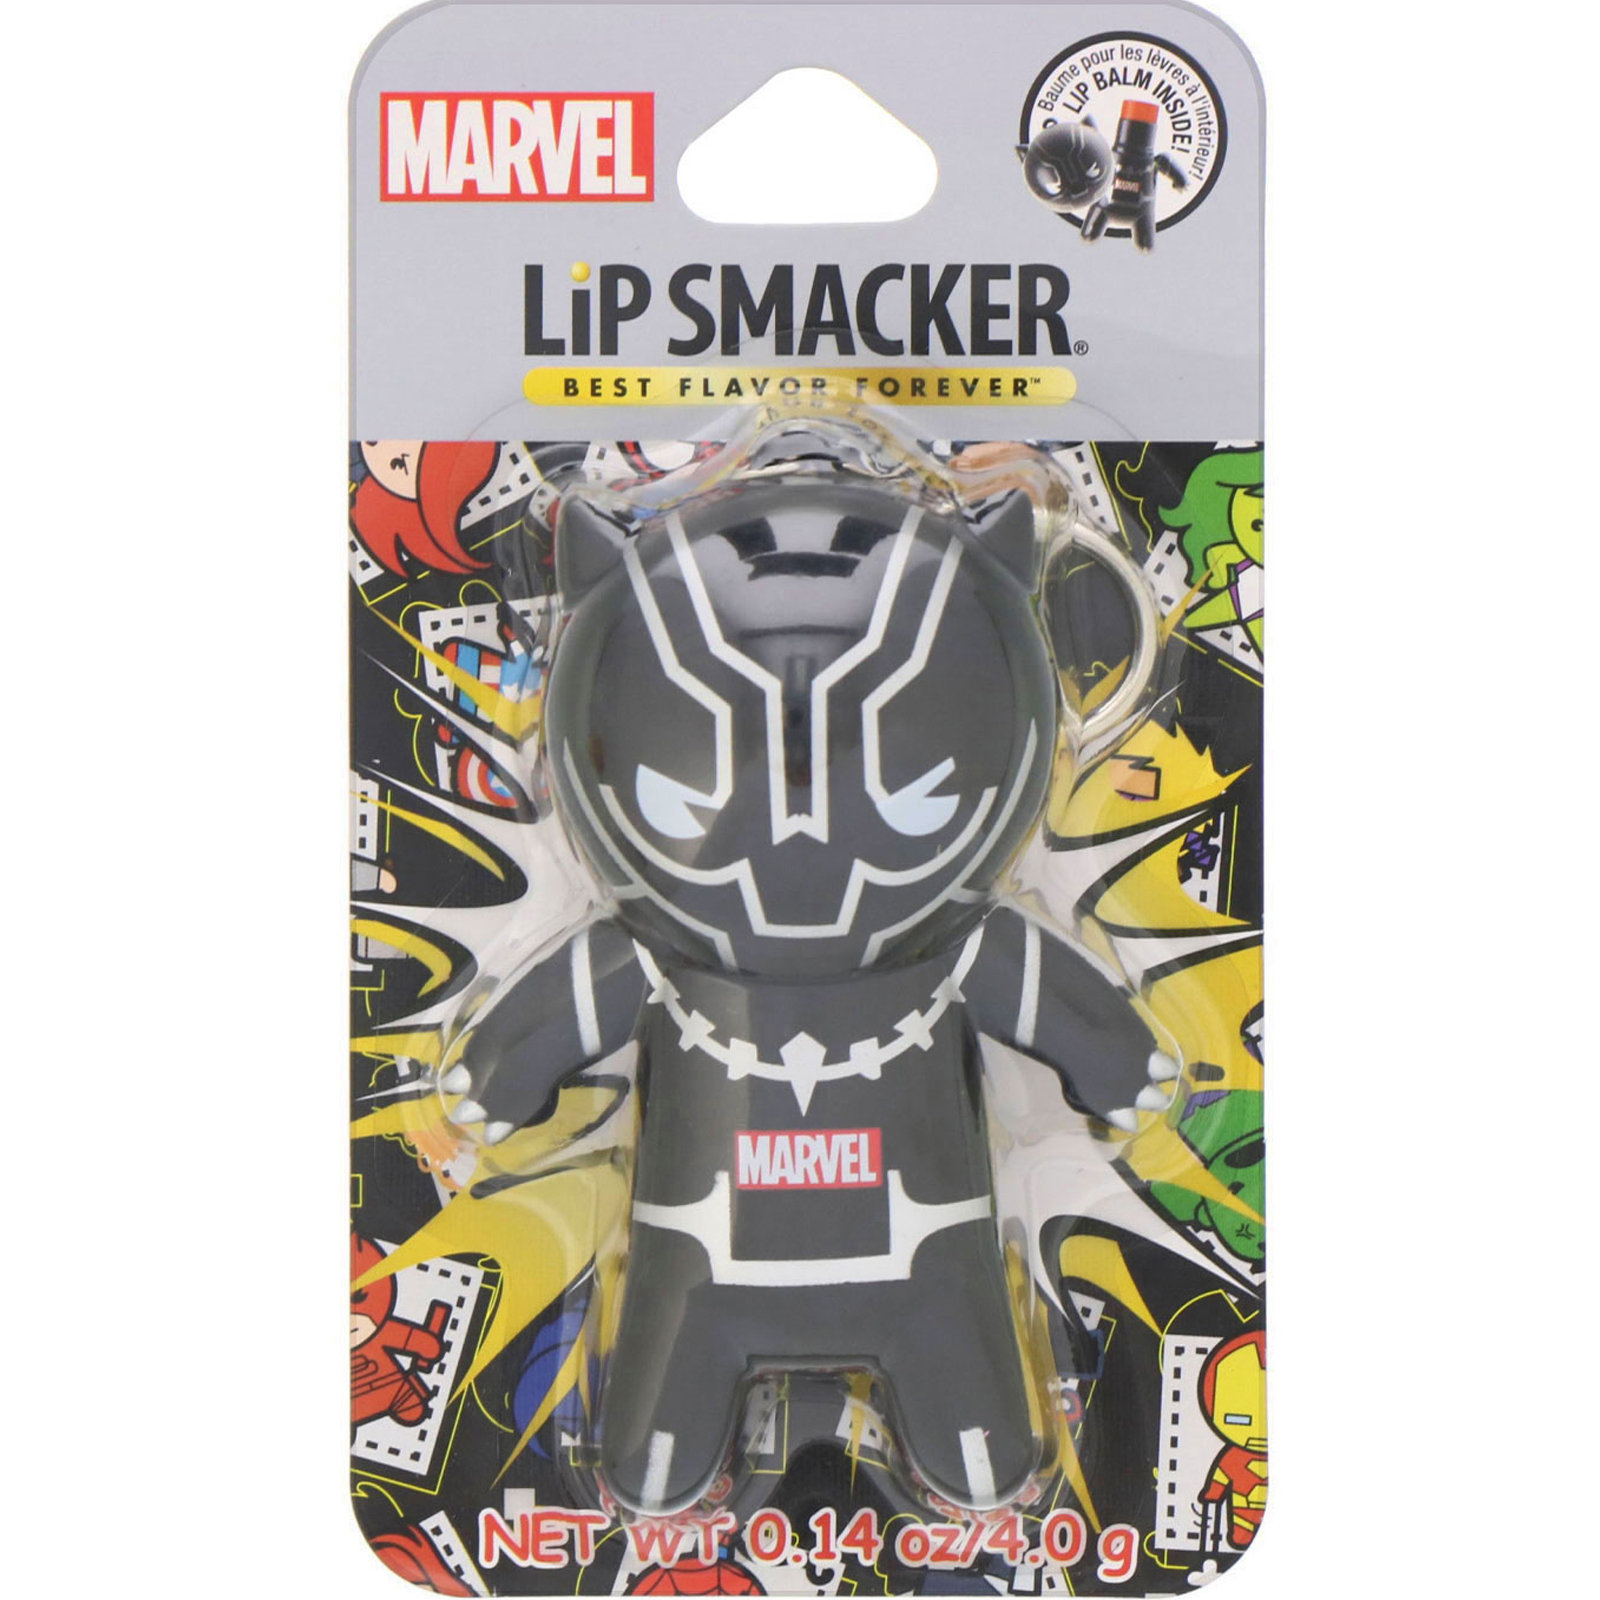 Comprar Lip Smacker, Protetor labial de superherói da